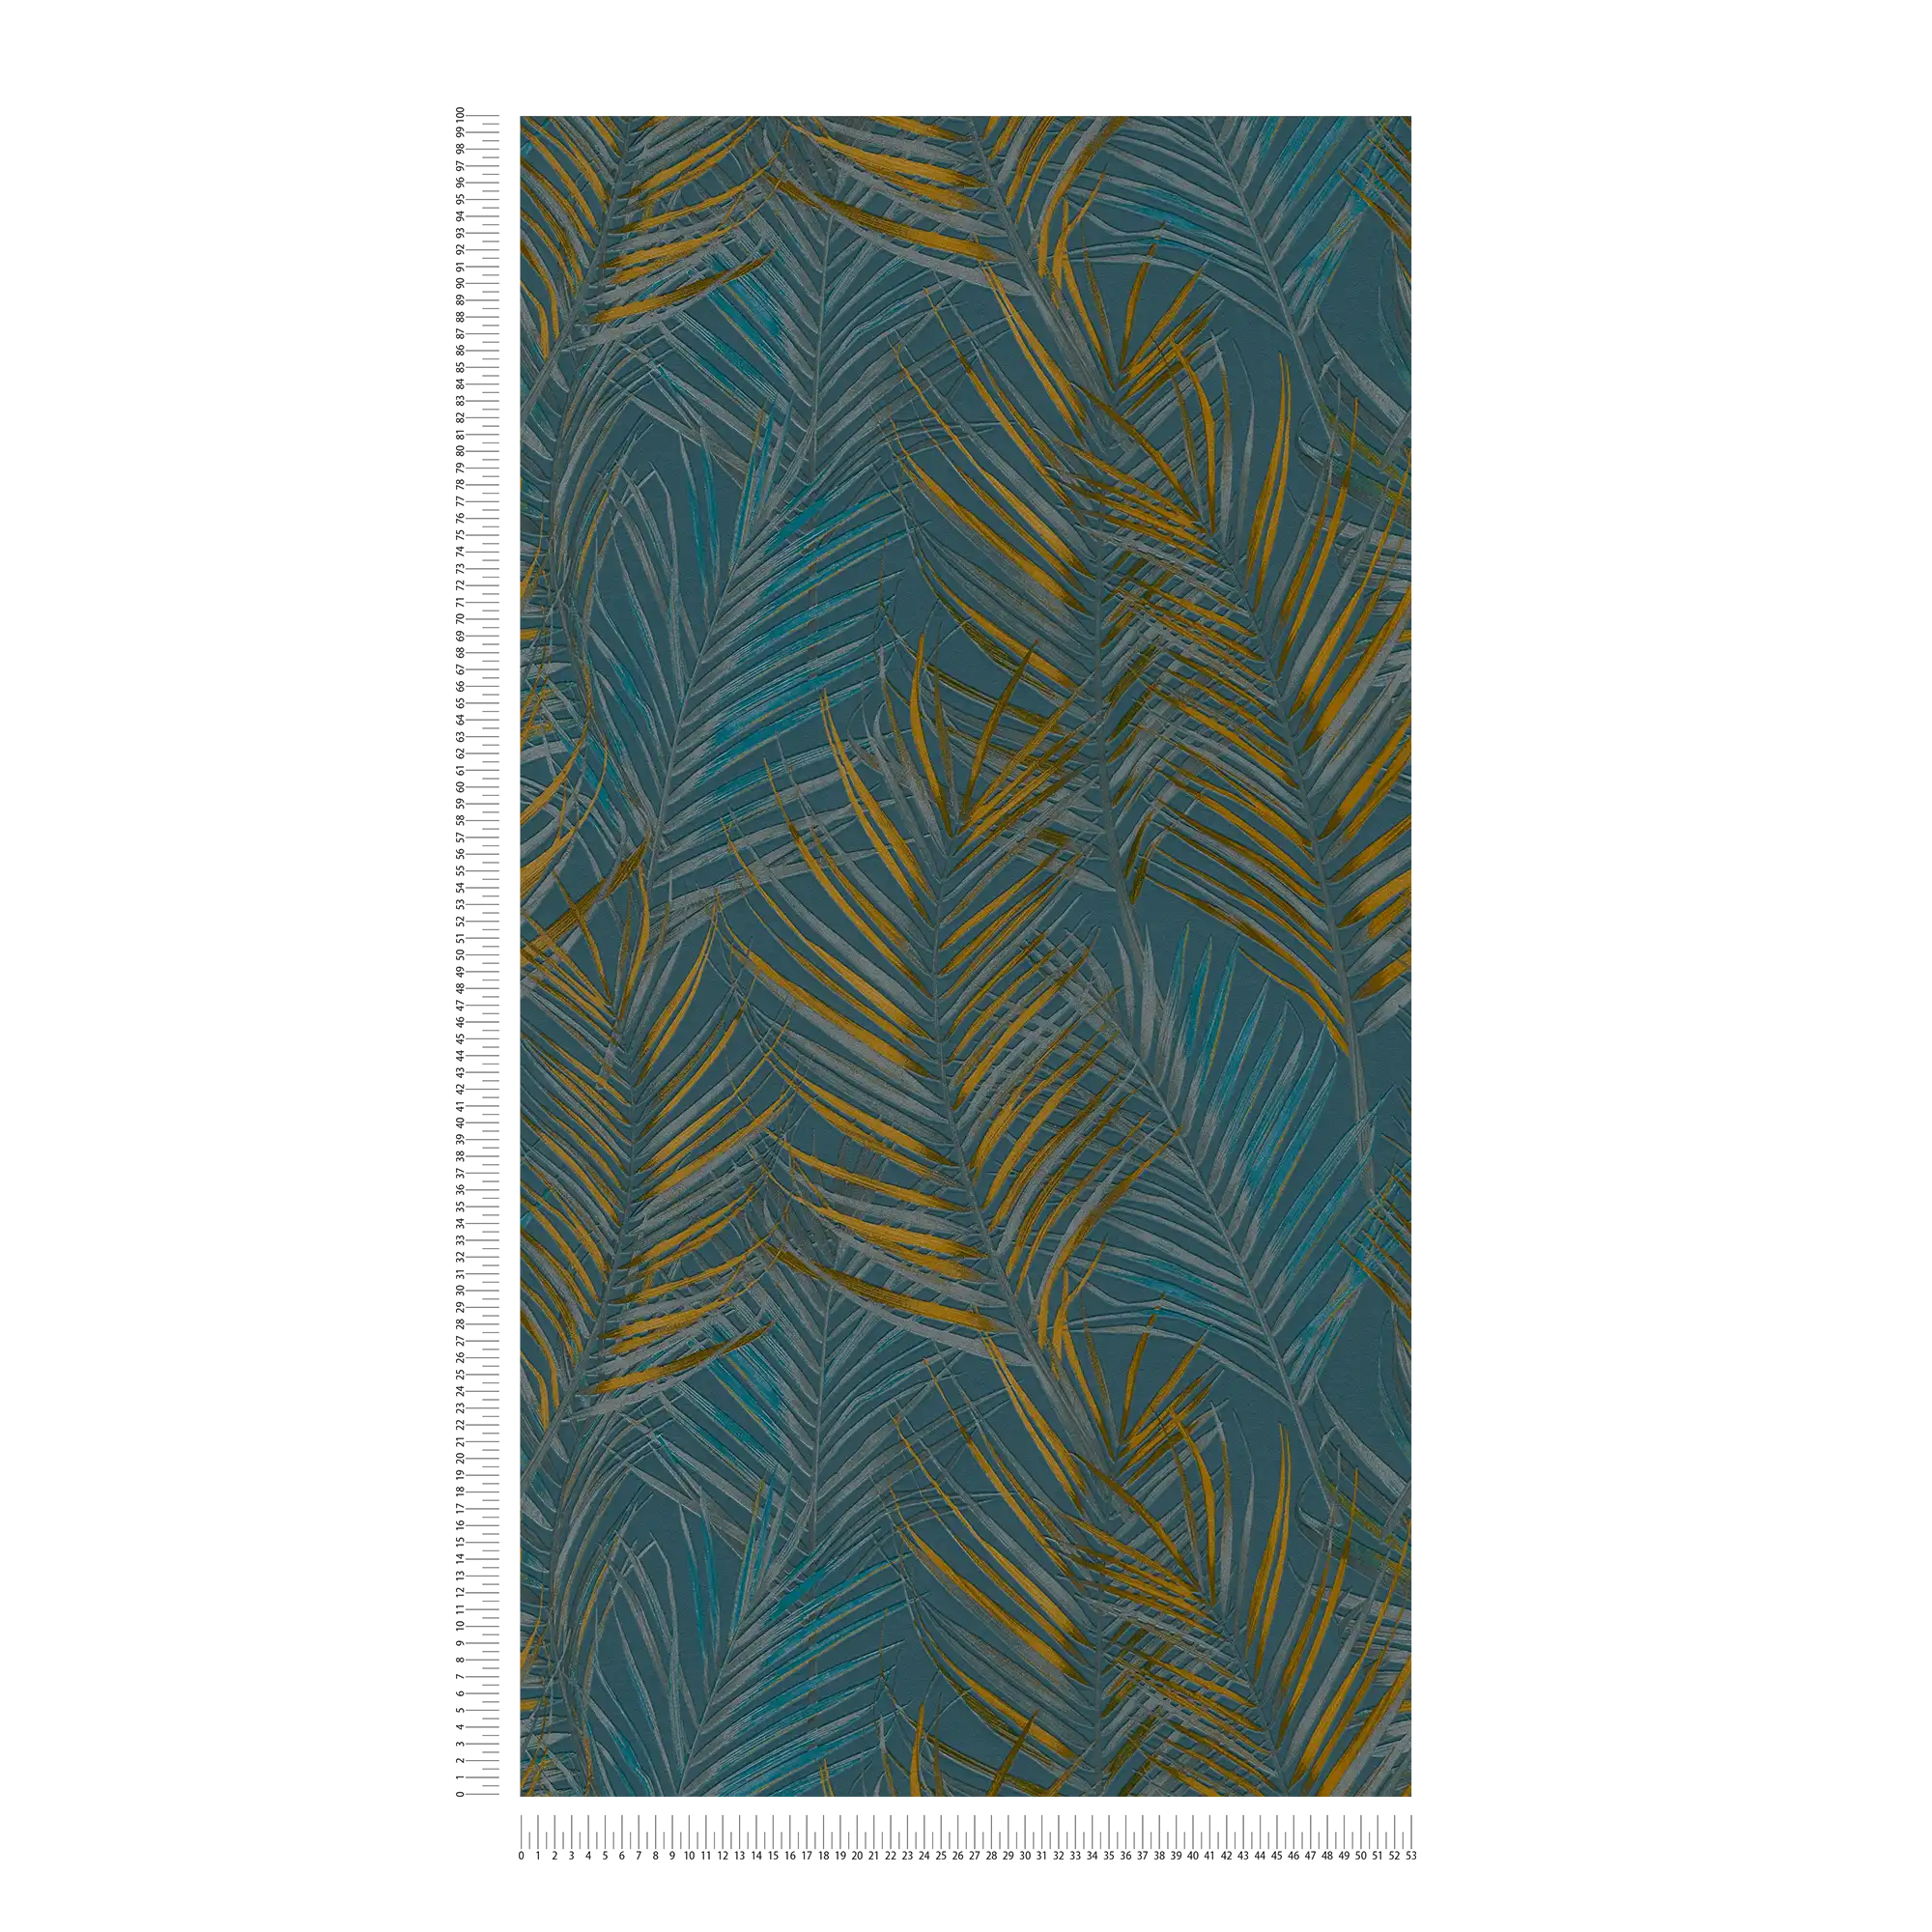             Papel pintado con motivo de la selva con hojas de palmera - azul, amarillo, petróleo
        